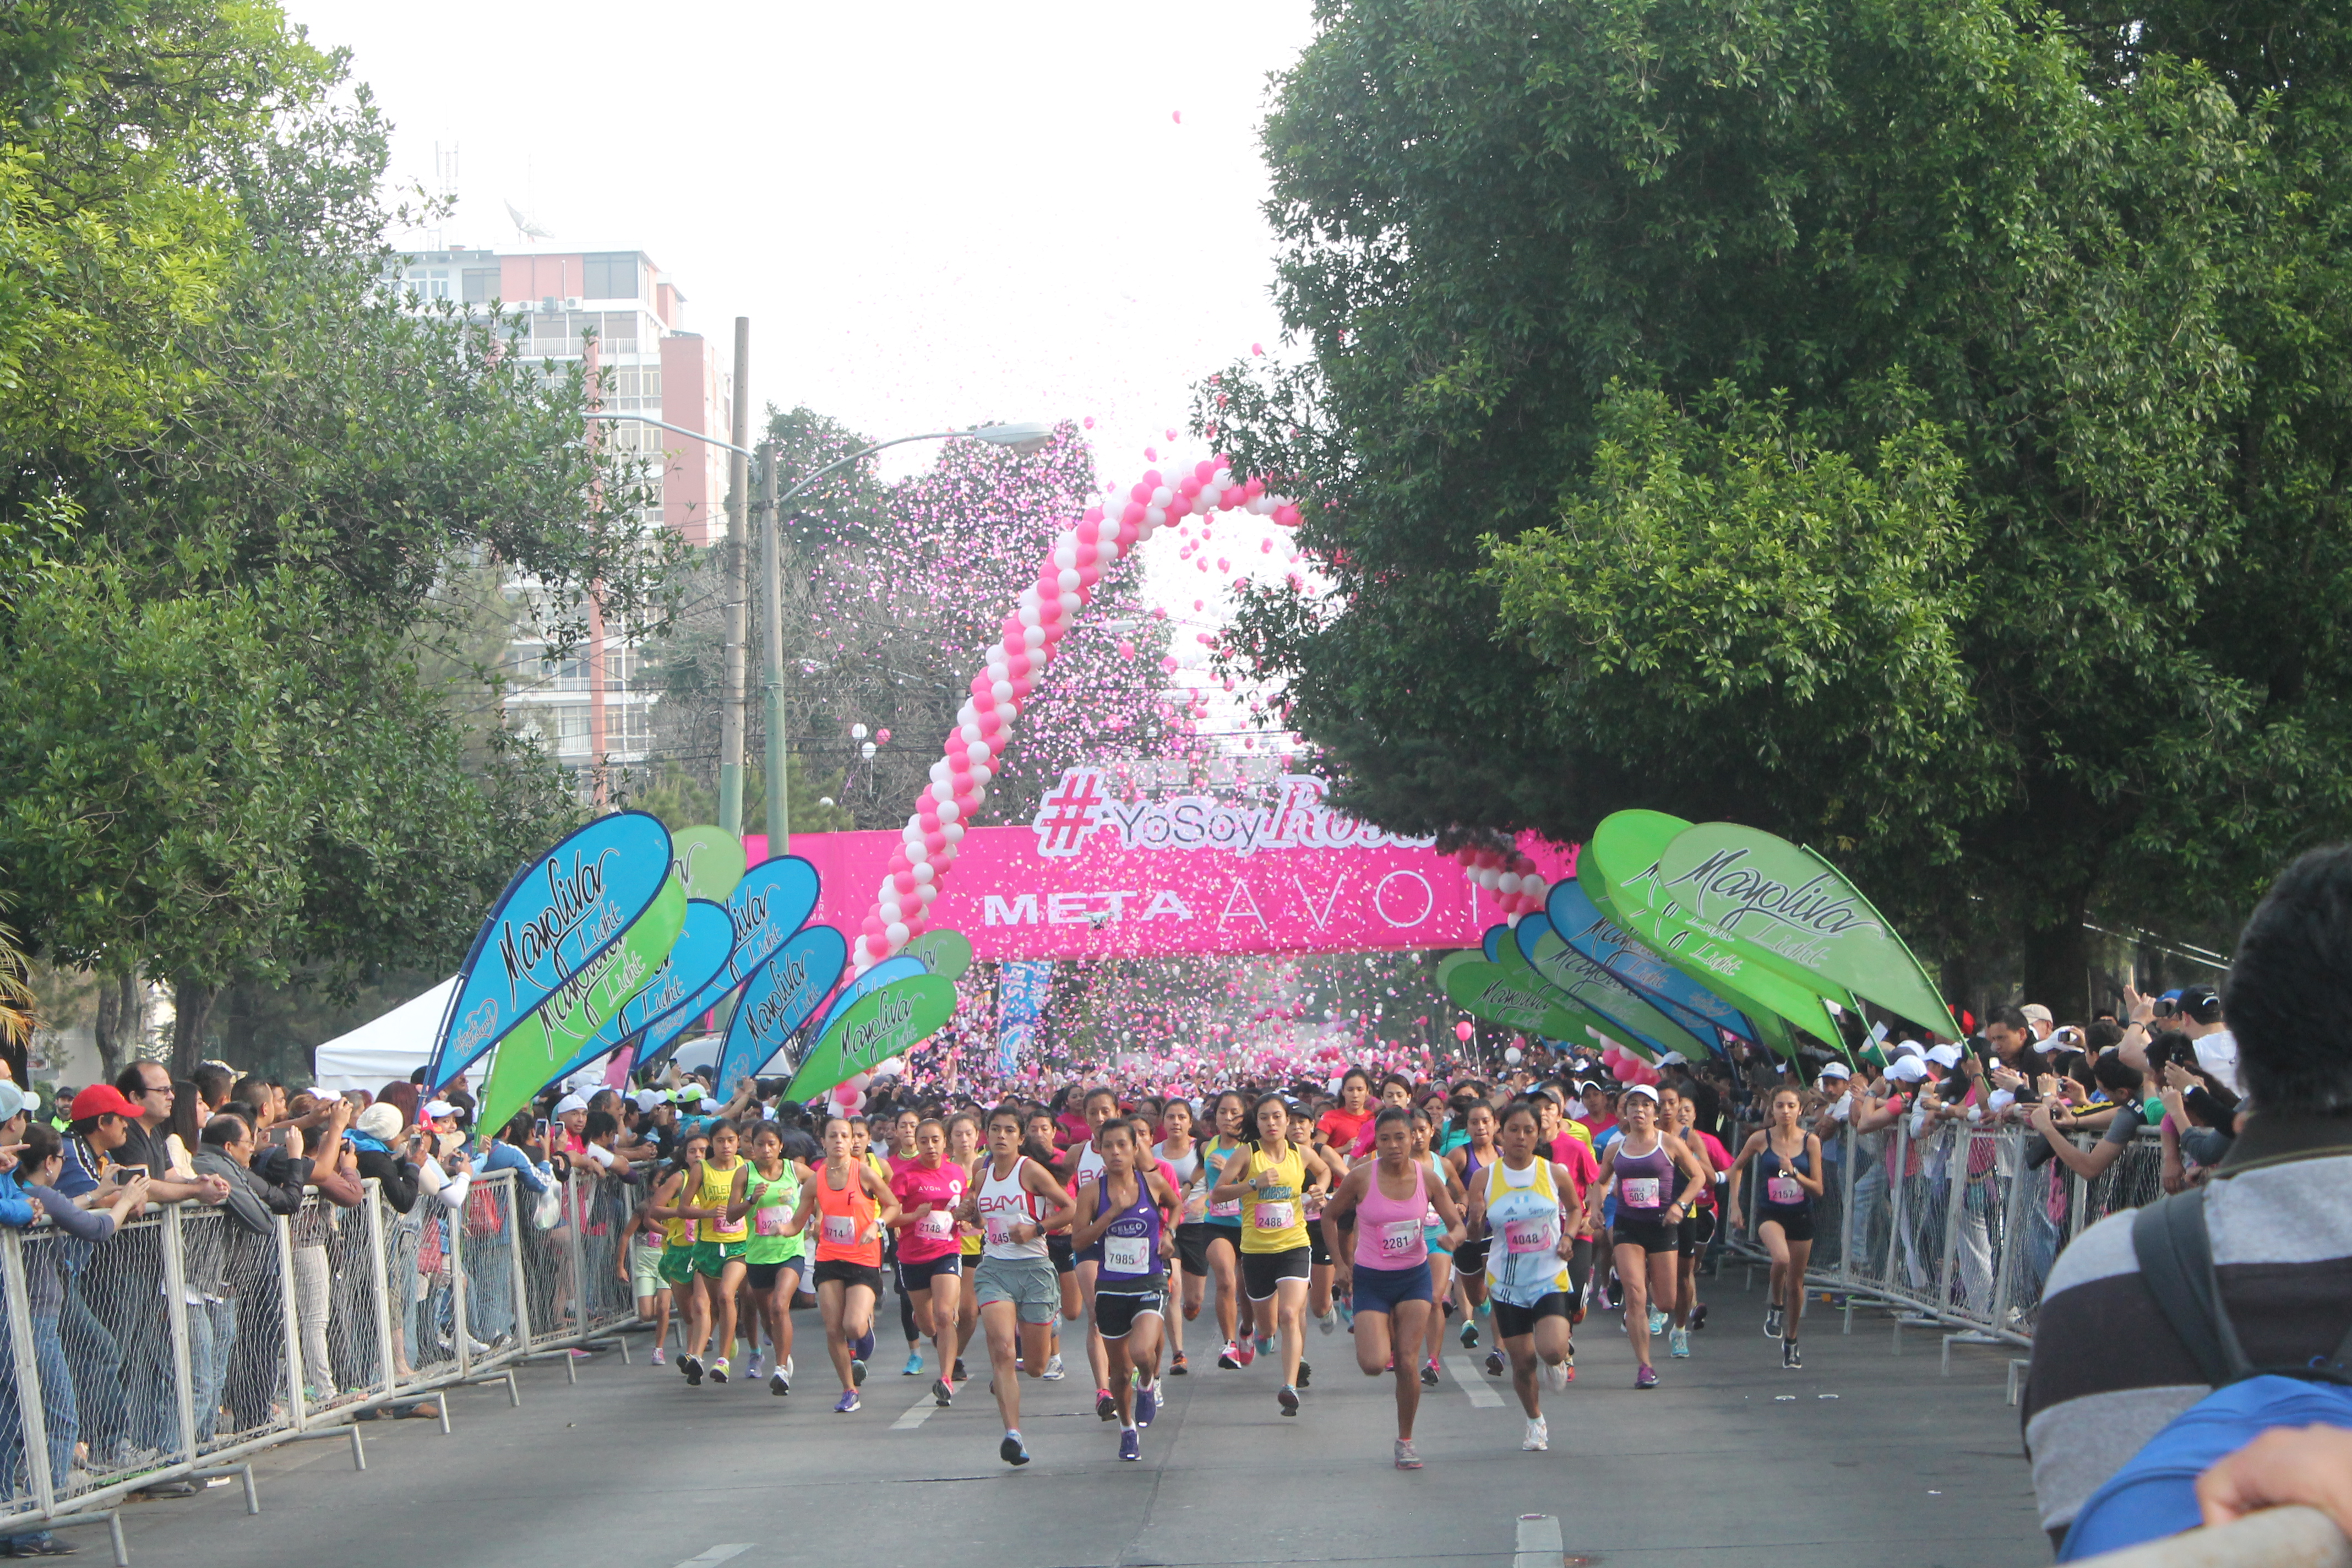 Avon celebrará 15 Años de realizar la carrera caminata contra el cáncer de mama